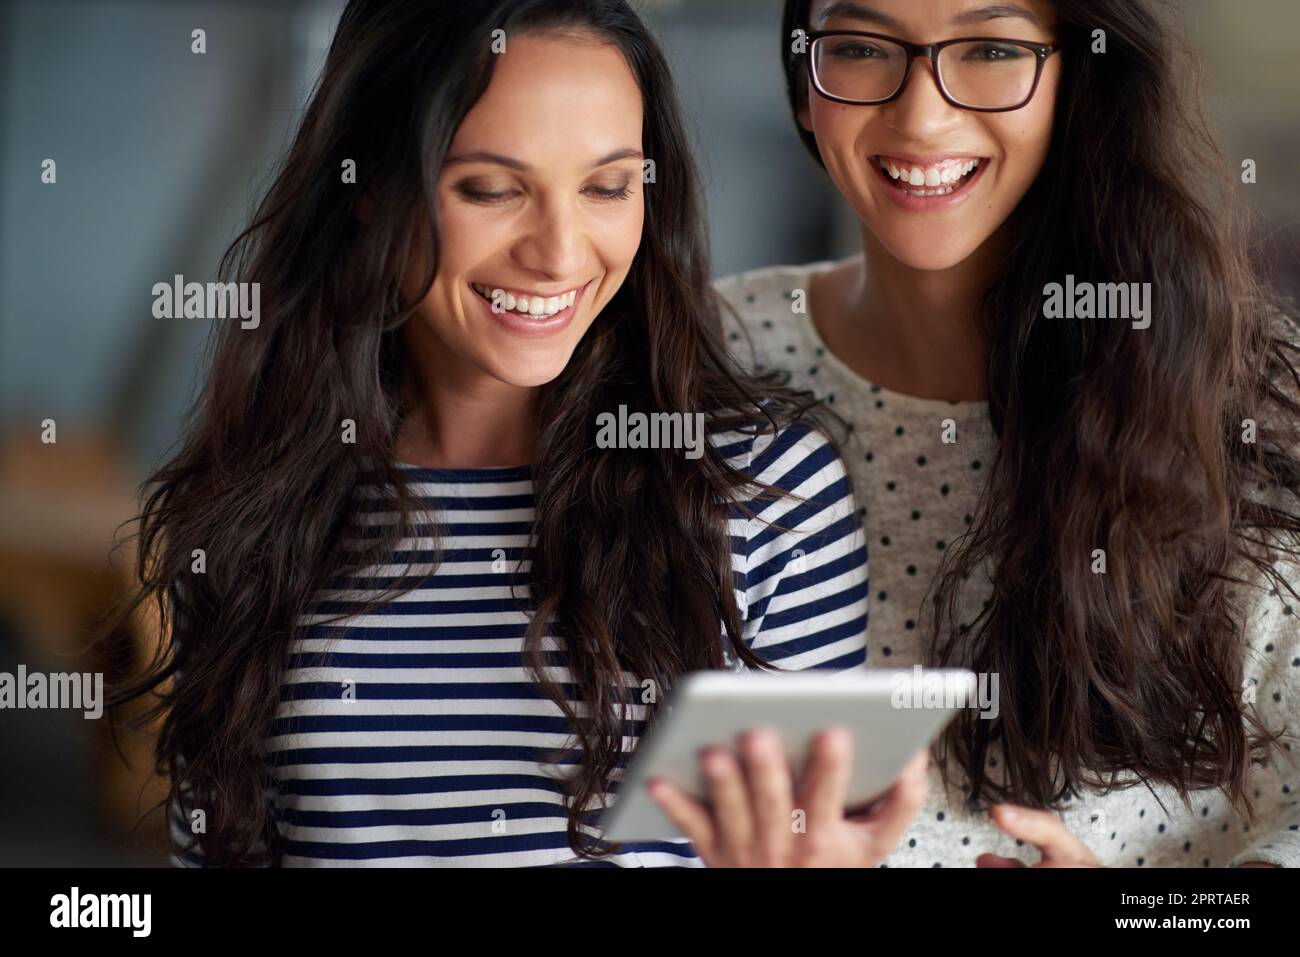 Sentirsi grandi per il mio lavoro e le relazioni. Bella giovane donna sorridente alla fotocamera mentre la sua amica guarda un tablet digitale. Foto Stock